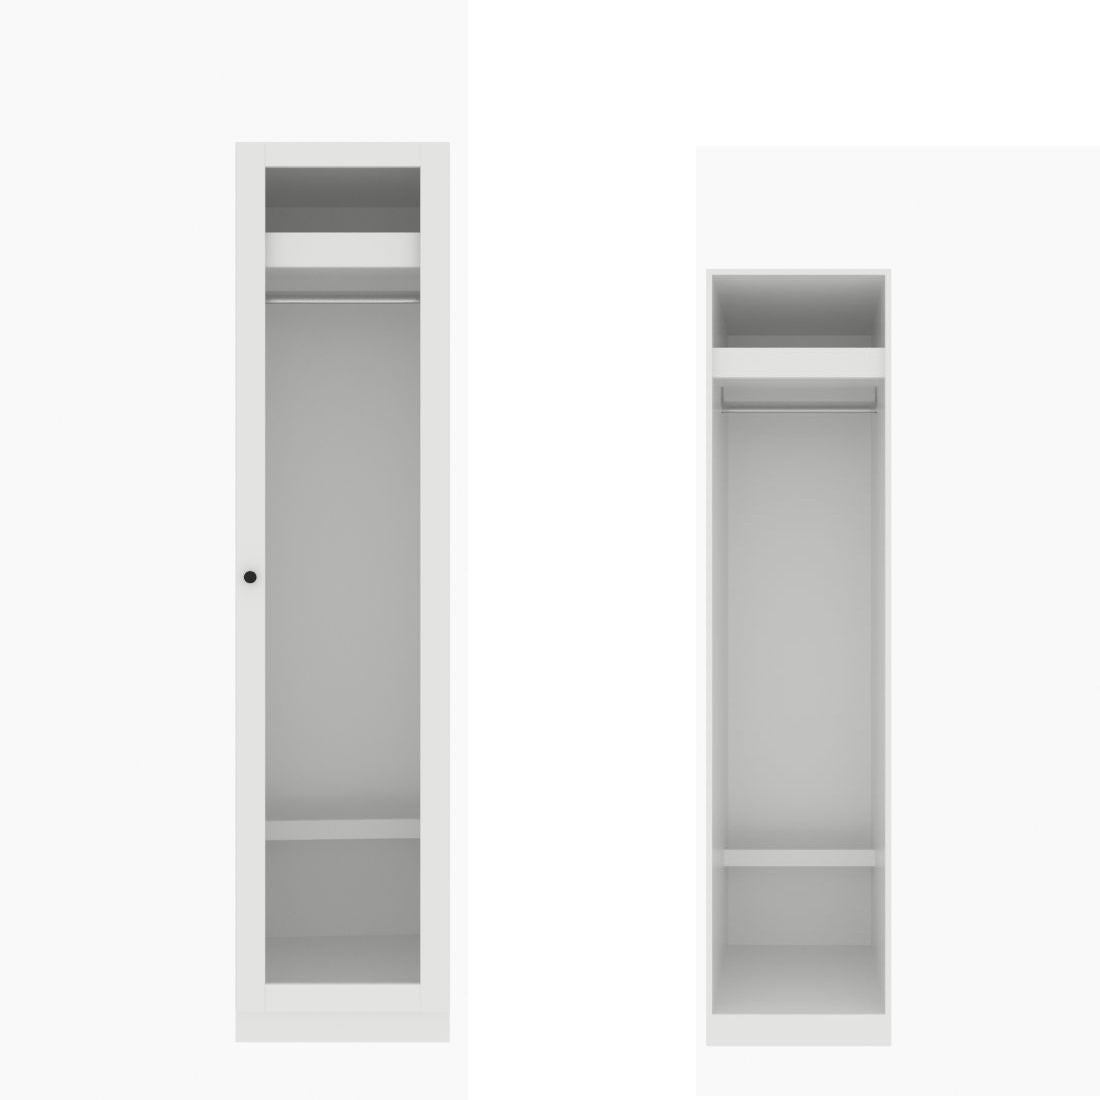 ตู้เสื้อผ้า ราวแขวนโล่ง OP-J (หน้าบานเปิดขวา) ขนาด 50 ซม. รุ่น Blox สีขาว&กระจกใส01